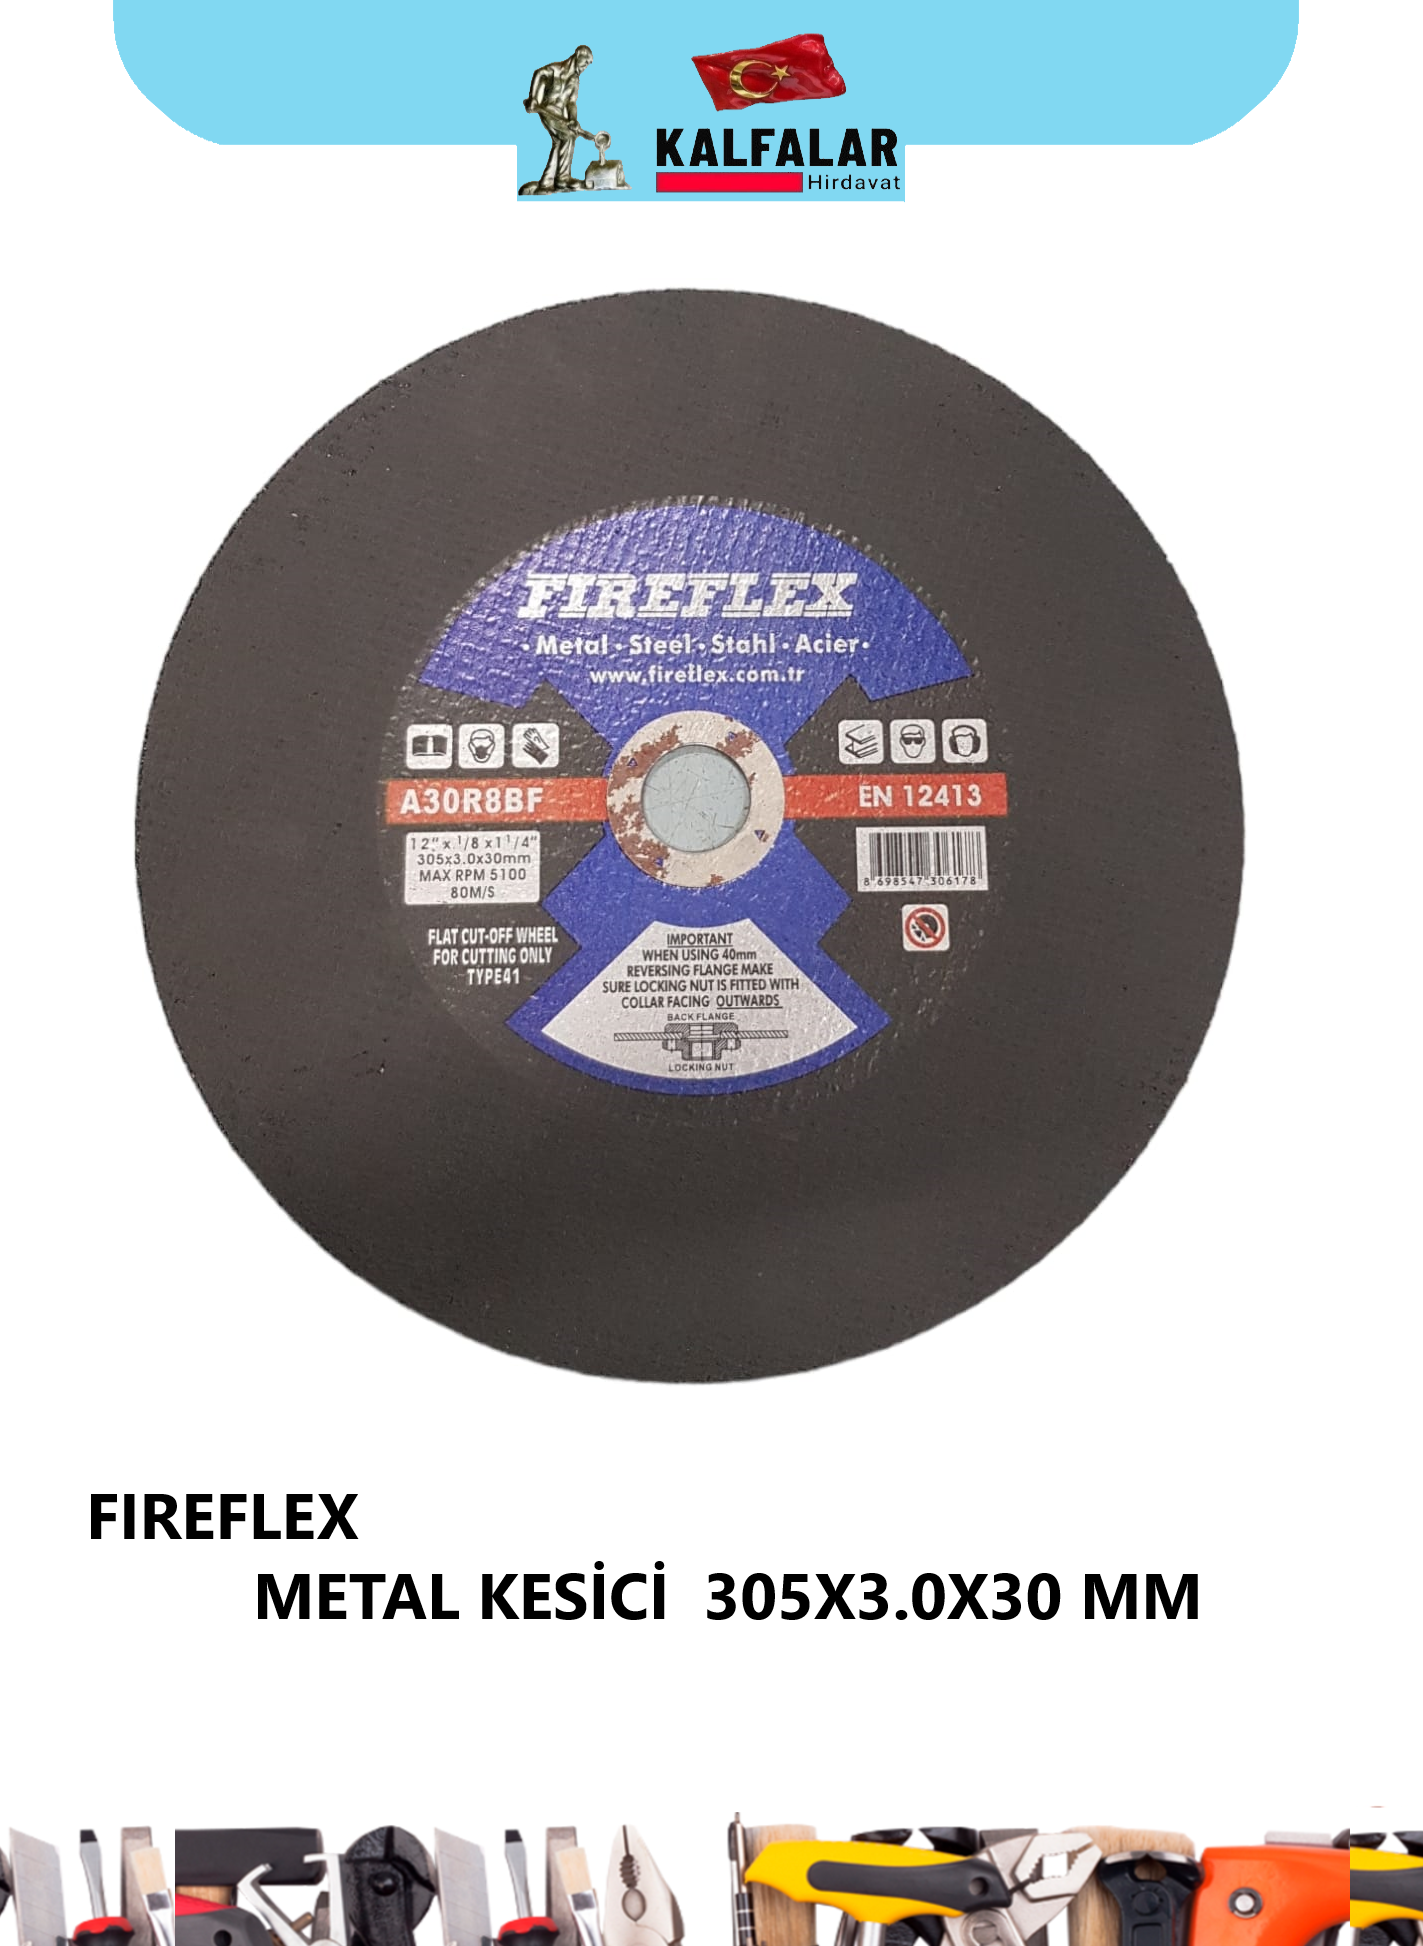 METAL KESİCİ 305X3.0X30 MM FIREFLEX